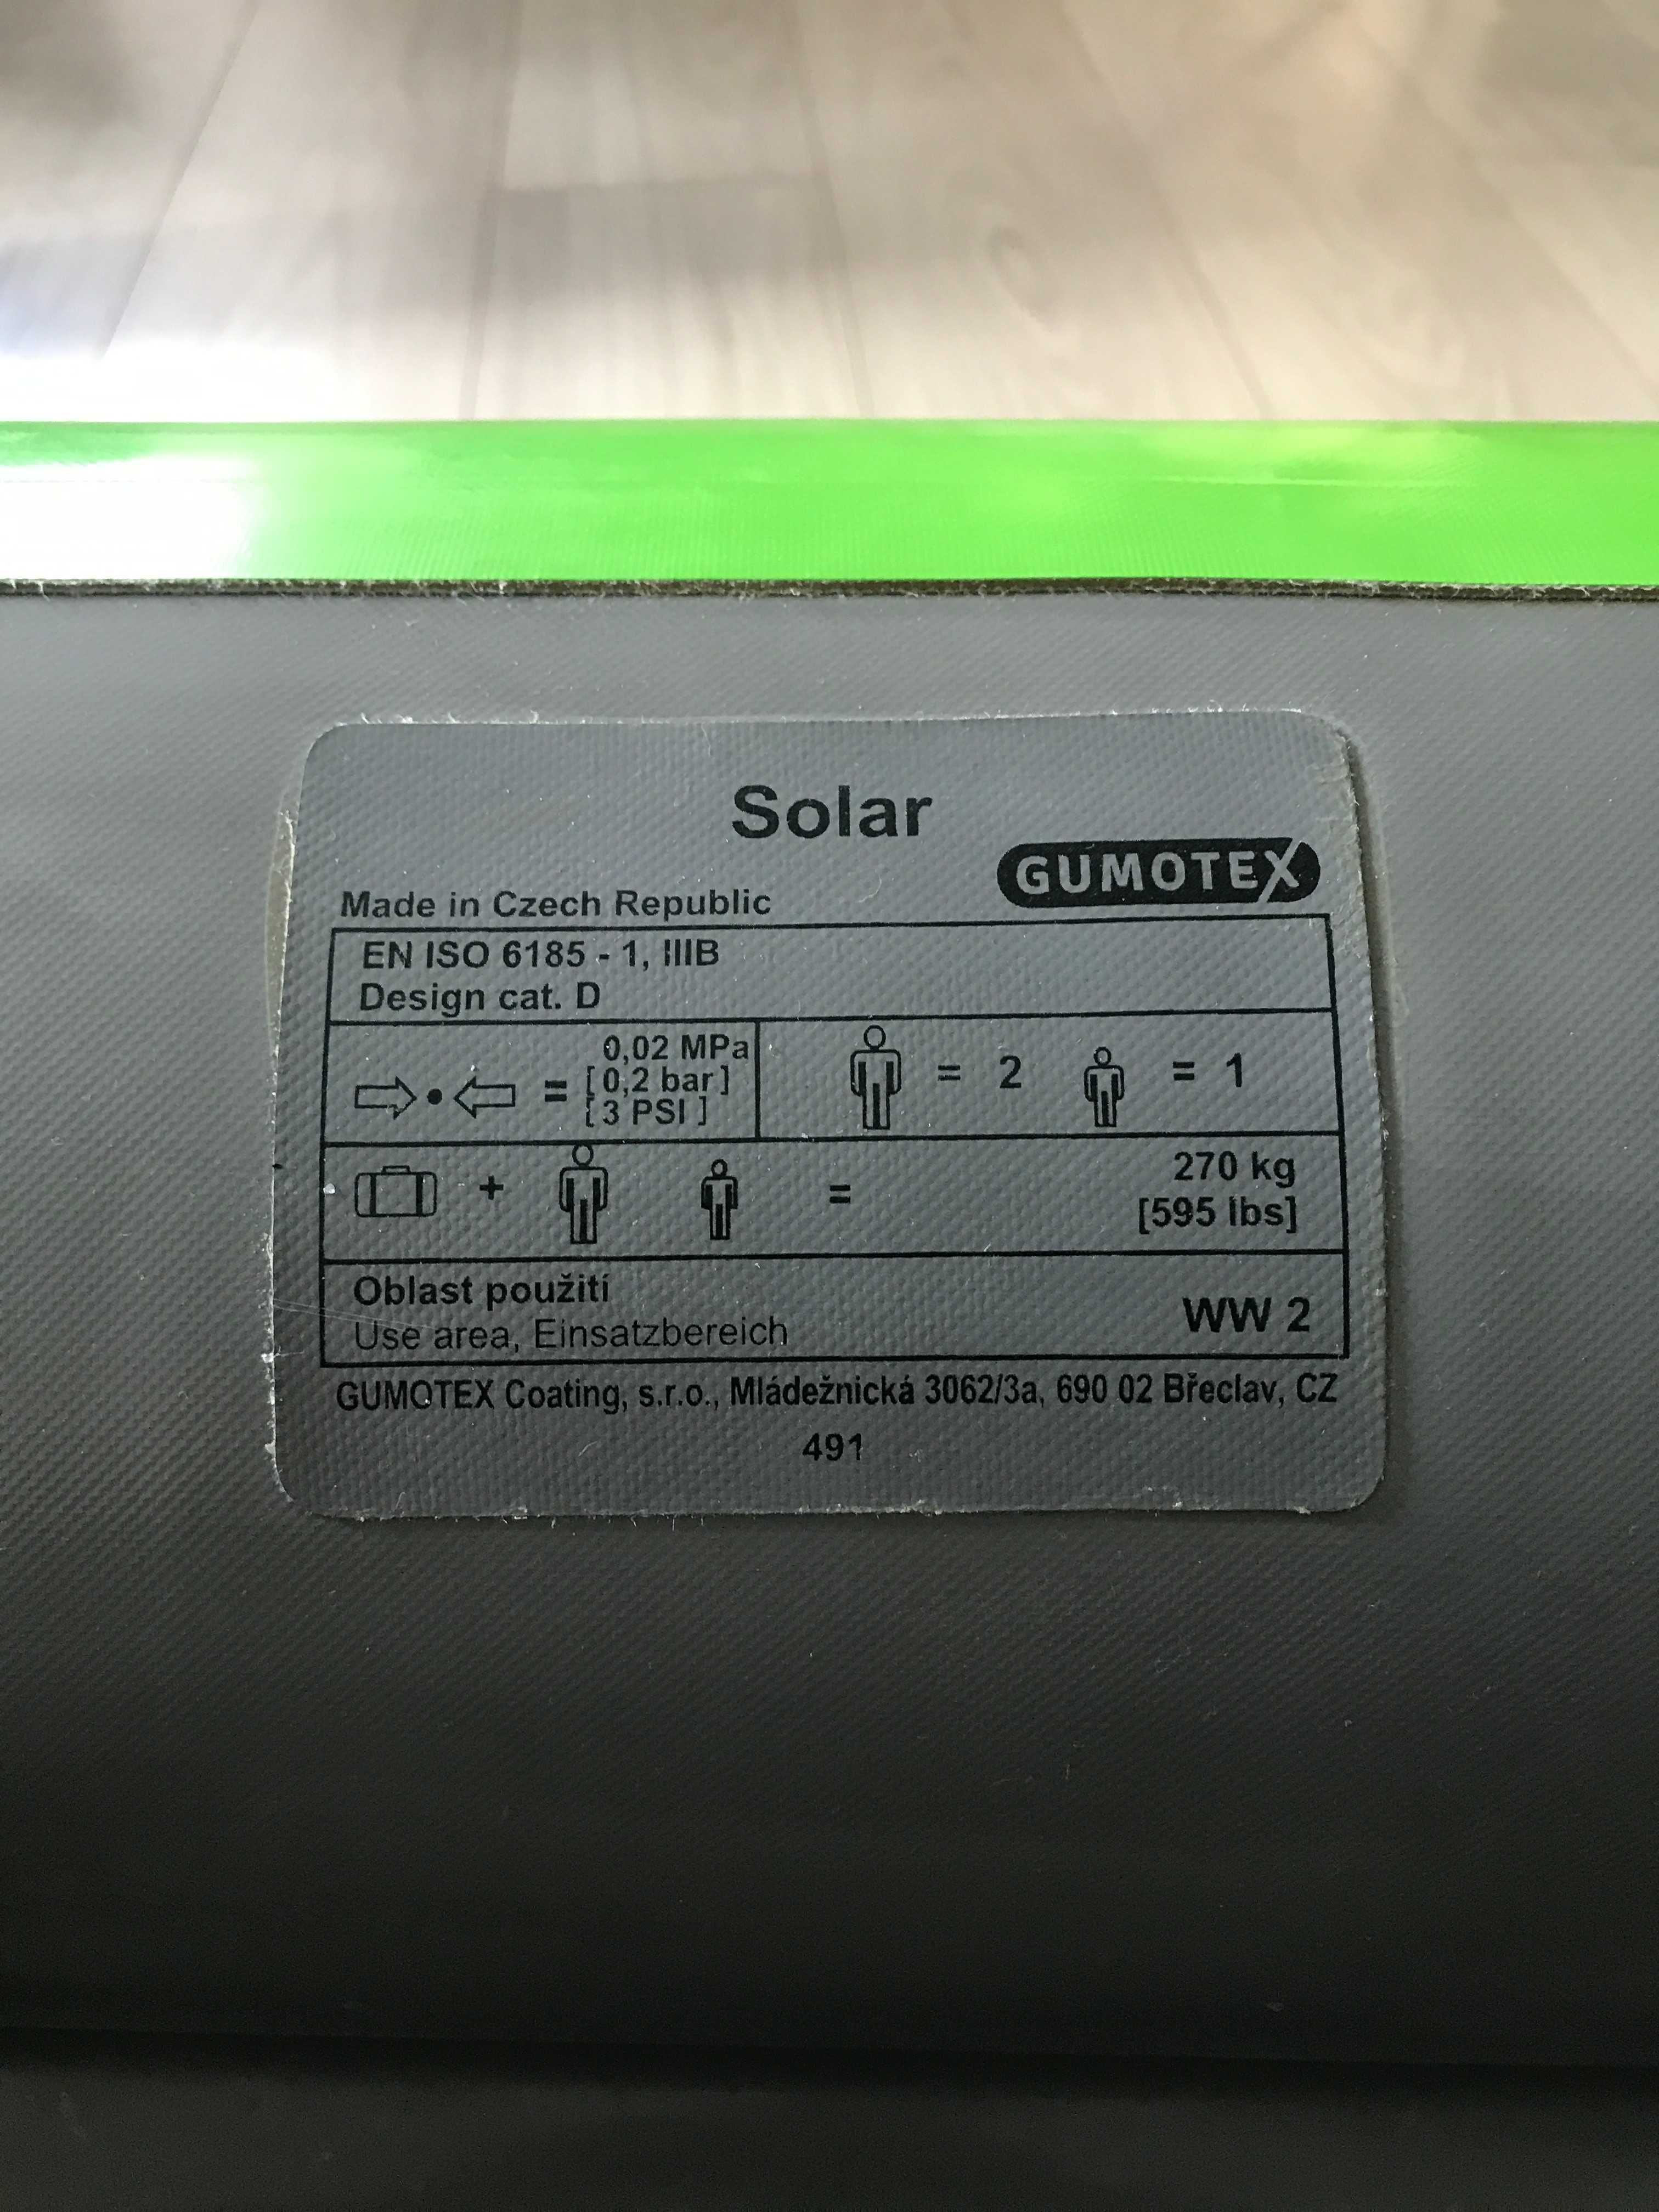 Kajak pneumatyczny (dmuchany, pompowany) Gumotex Solar. Cały zestaw